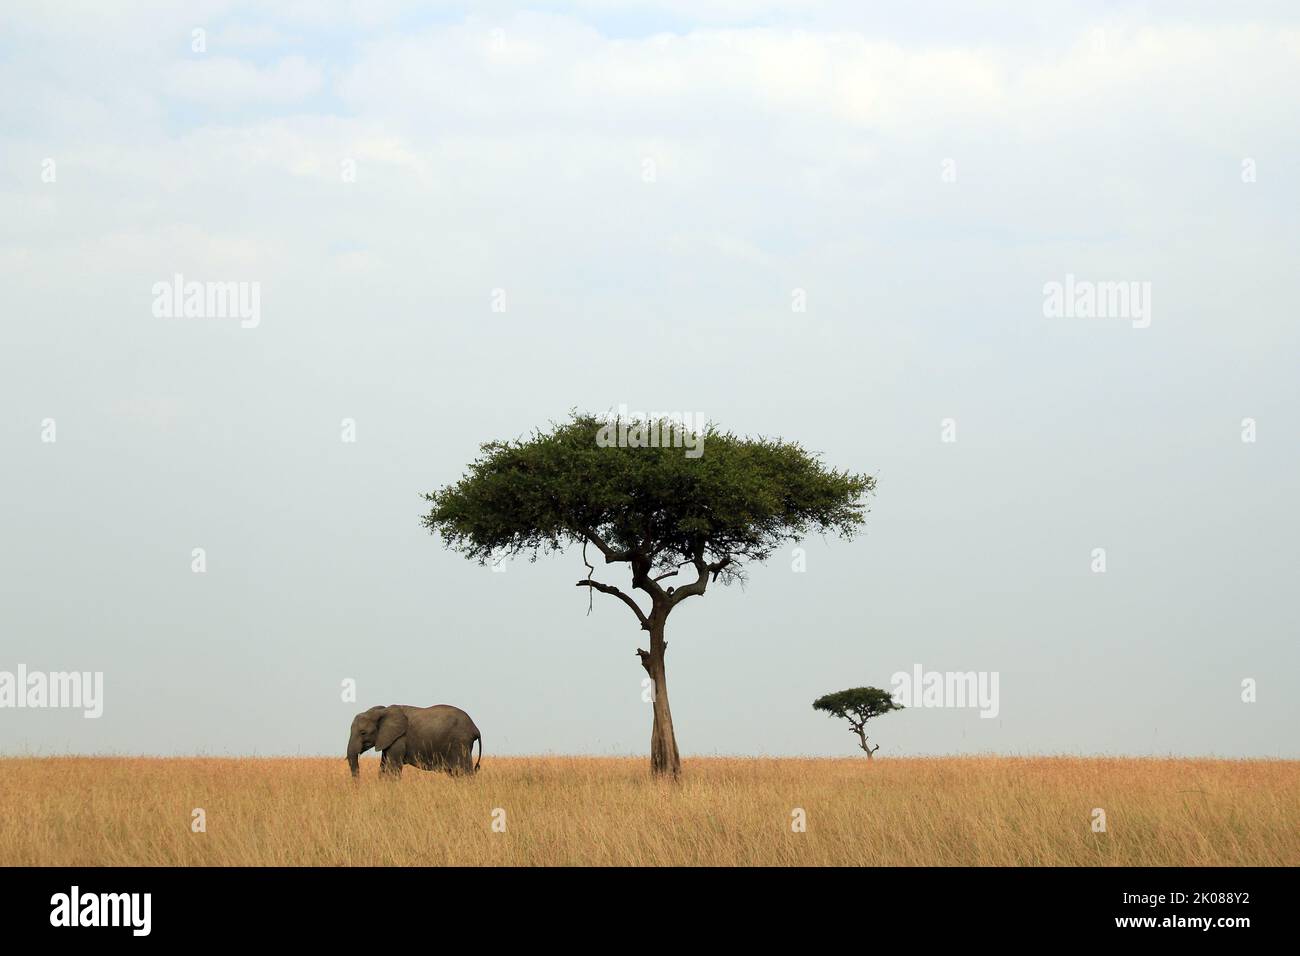 Panorama View of African Elephant and Acacia Trees on the Savannah. Maasai Mara, Kenya Stock Photo